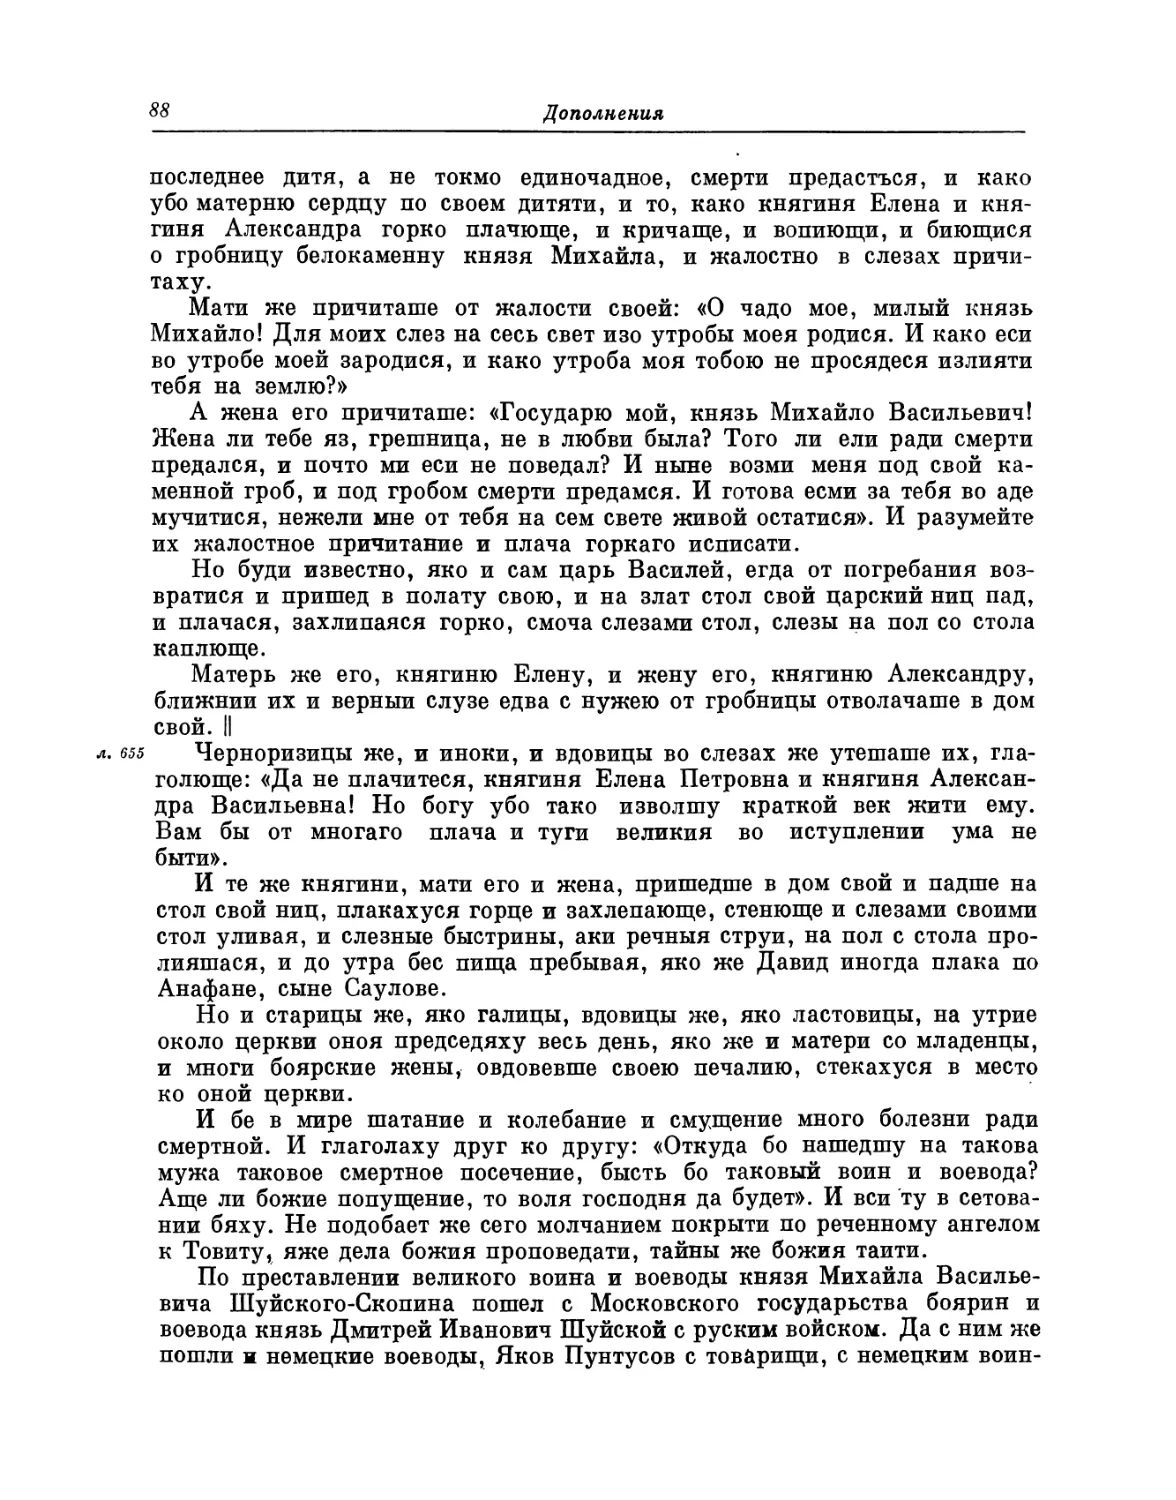 II. Письма смоленским дворянам в лагерь В.М. Скопина-Шуйского из осажденного Смоленска